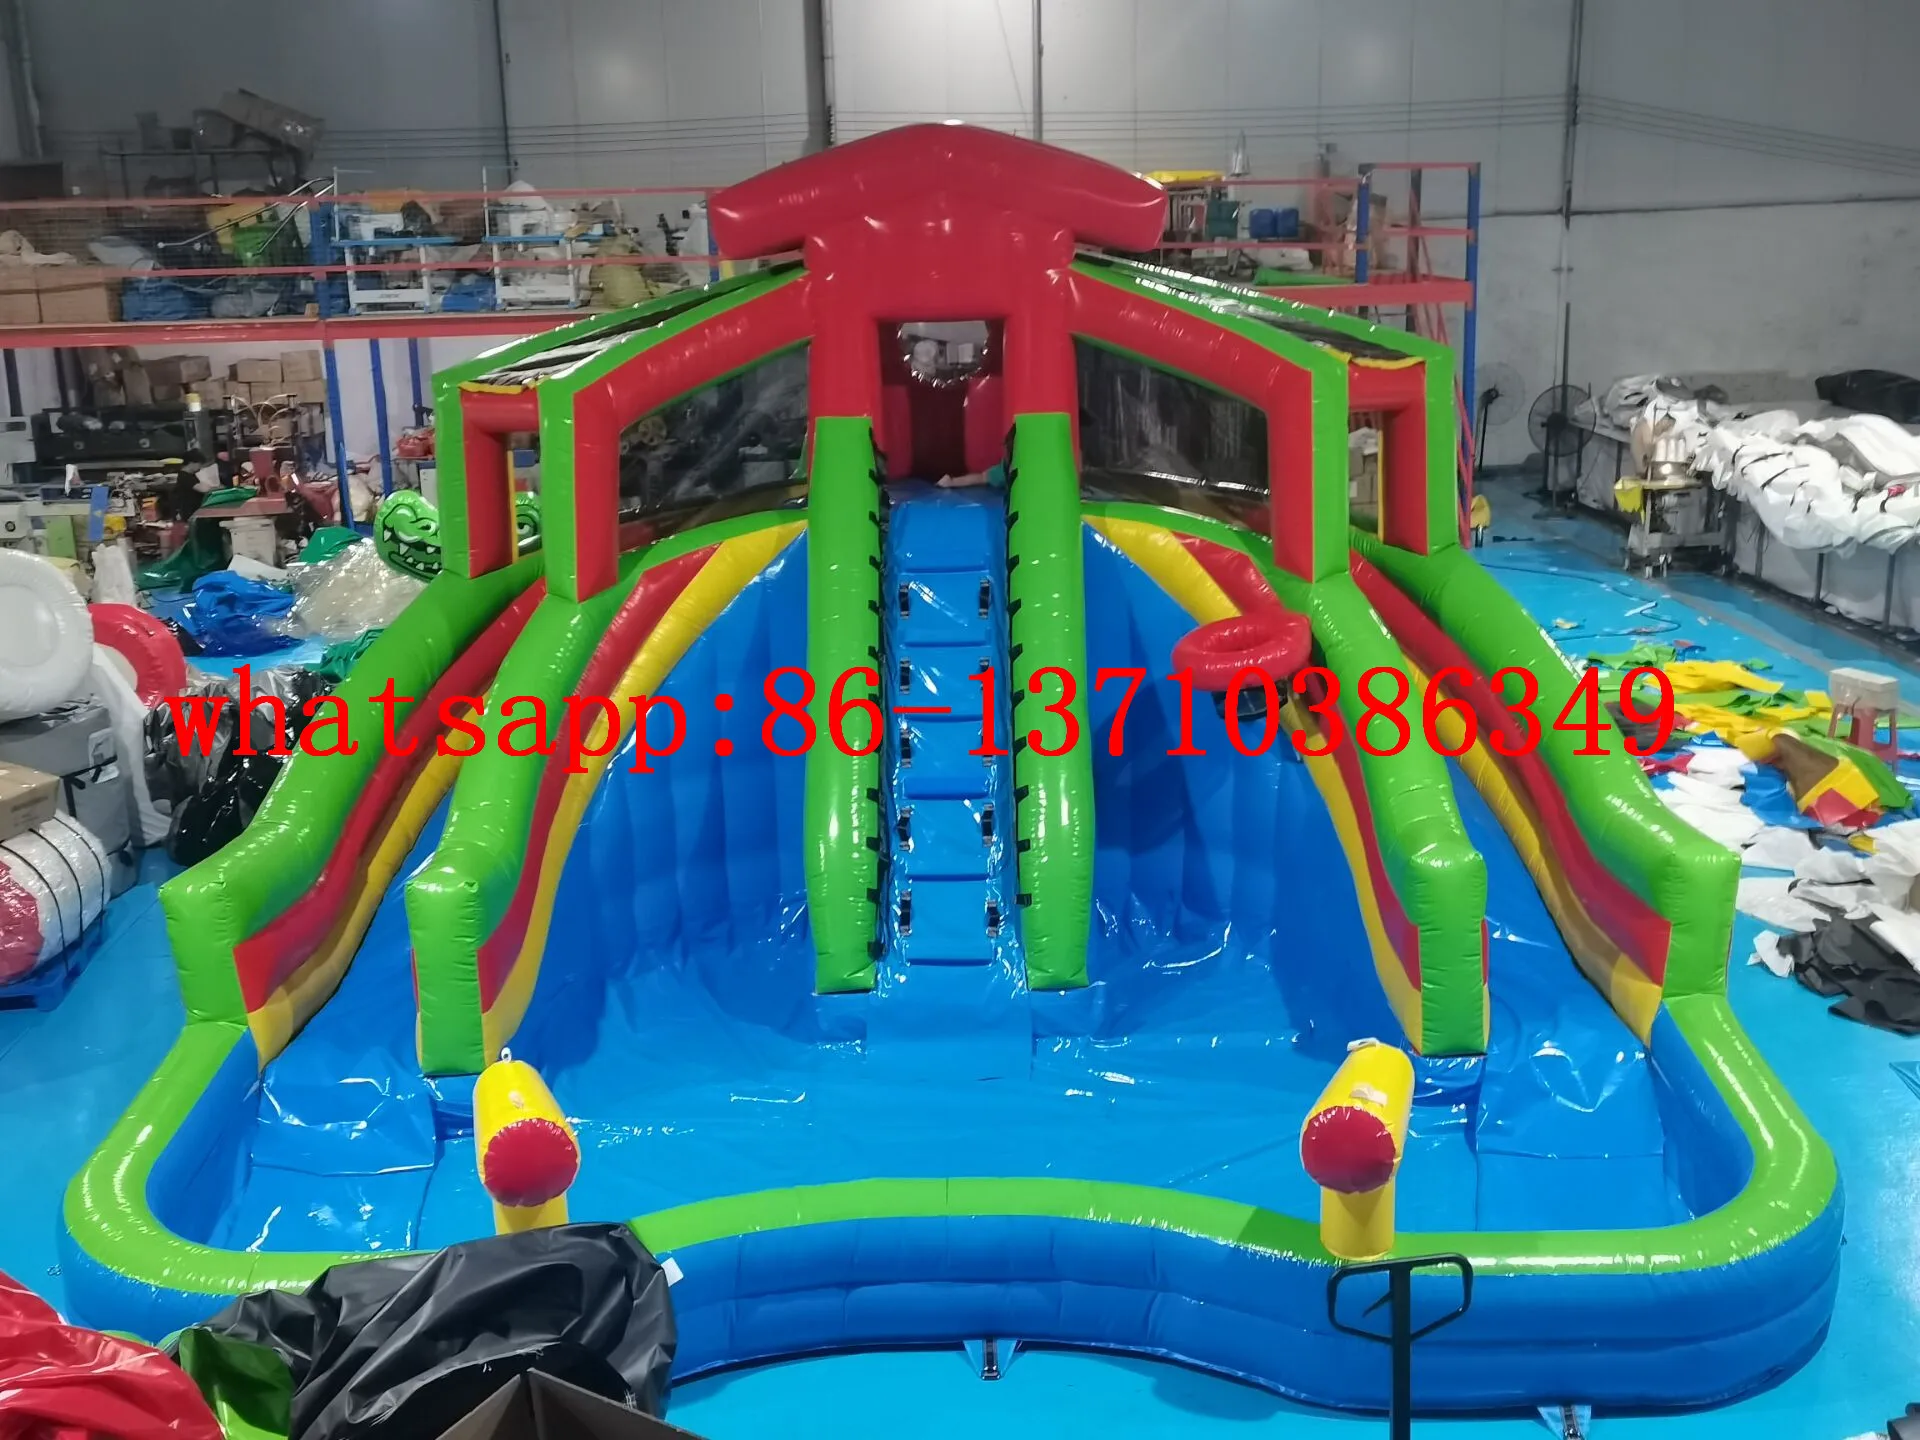 

Commercial hot sale rental kids inflatable pool slide castle